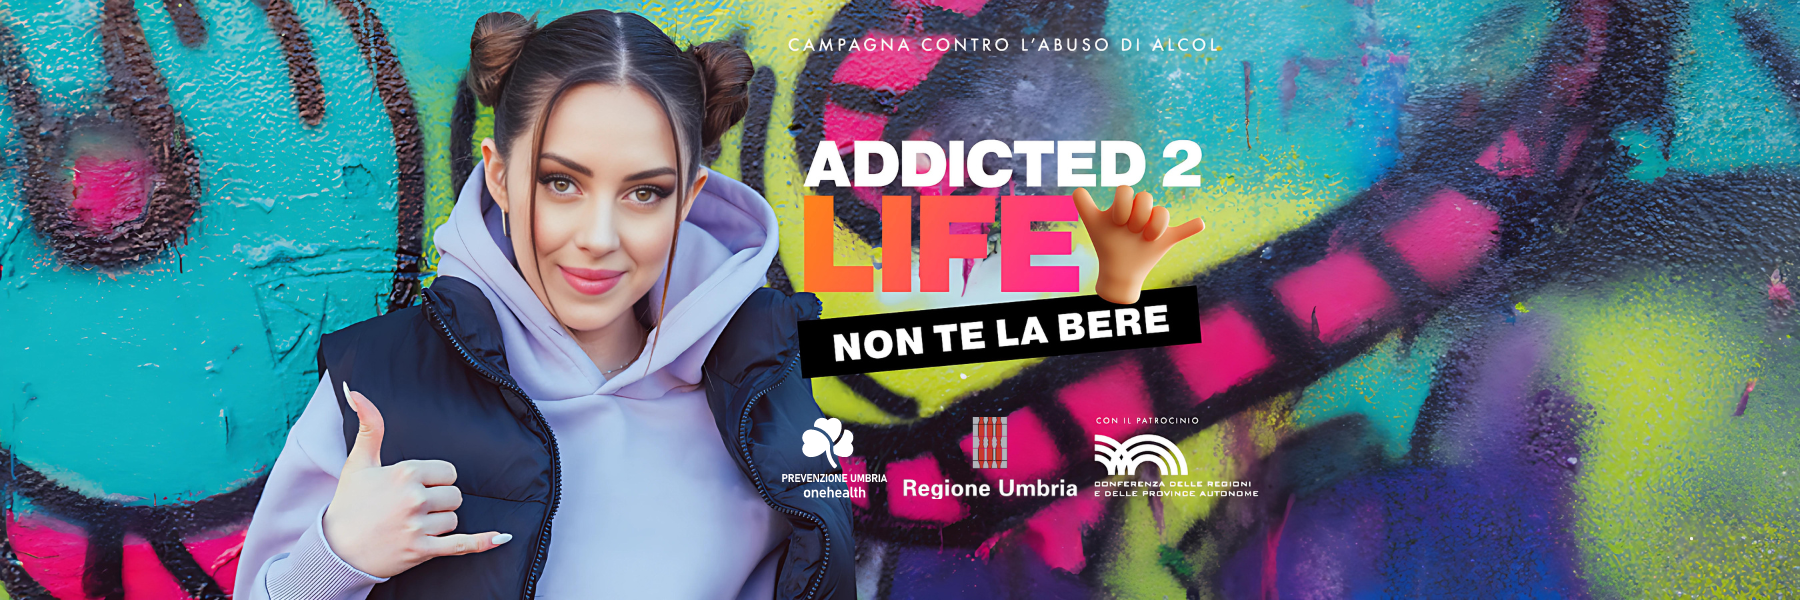 Campagna contro l'abuso di alcol: Addicted2life - Non te la bere